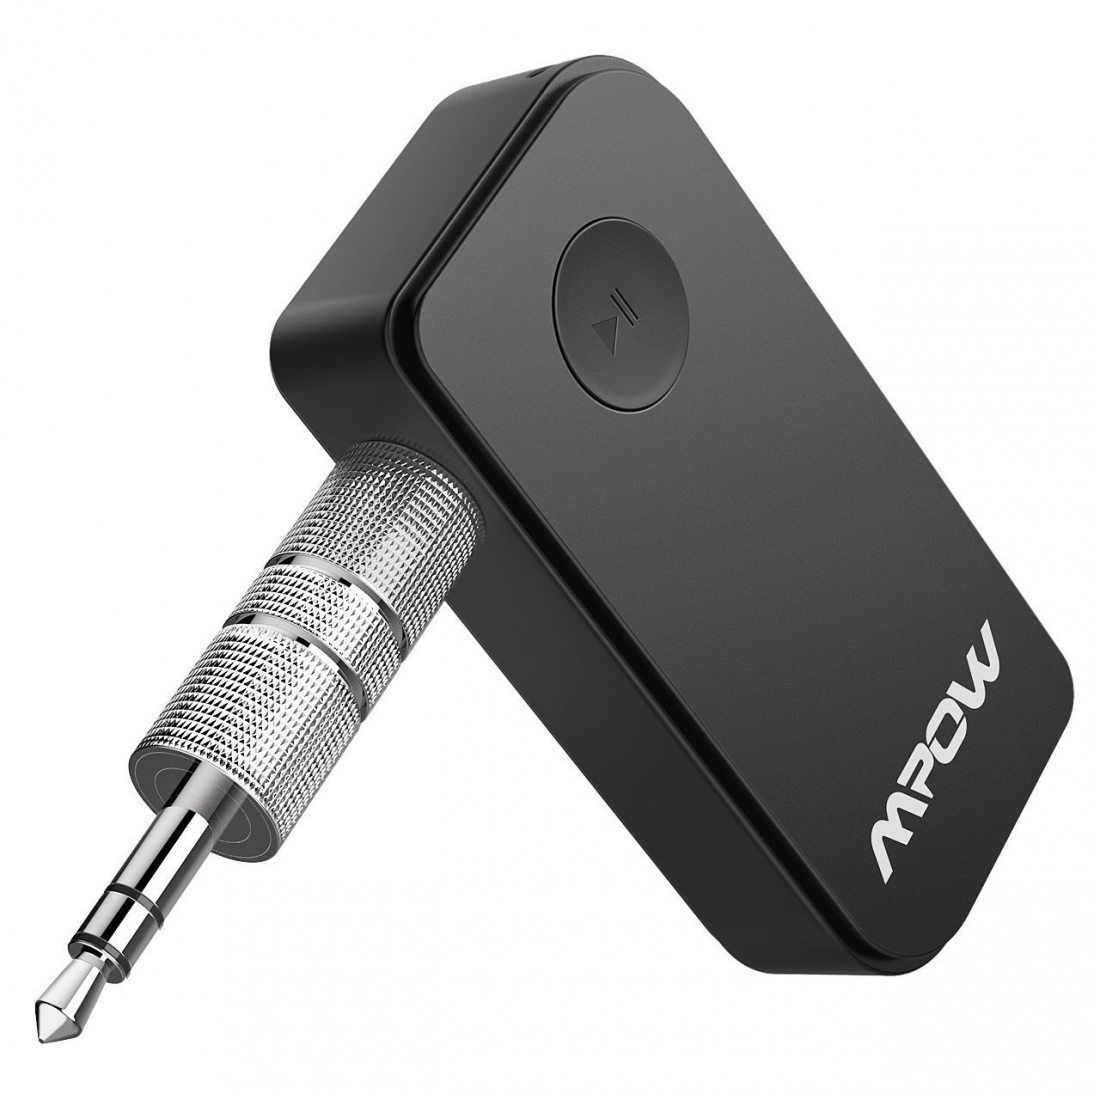 Streaming Maison/Kit Auto Voiture HiFi Mpow Récepteur Bluetooth 4.1 Adaptateur Audio sans Fil Kit Mains Libres Voiture Deux Connexions avec Micro Intégré et Sortie Stéréo 3,5mm pour Haut-parleurs